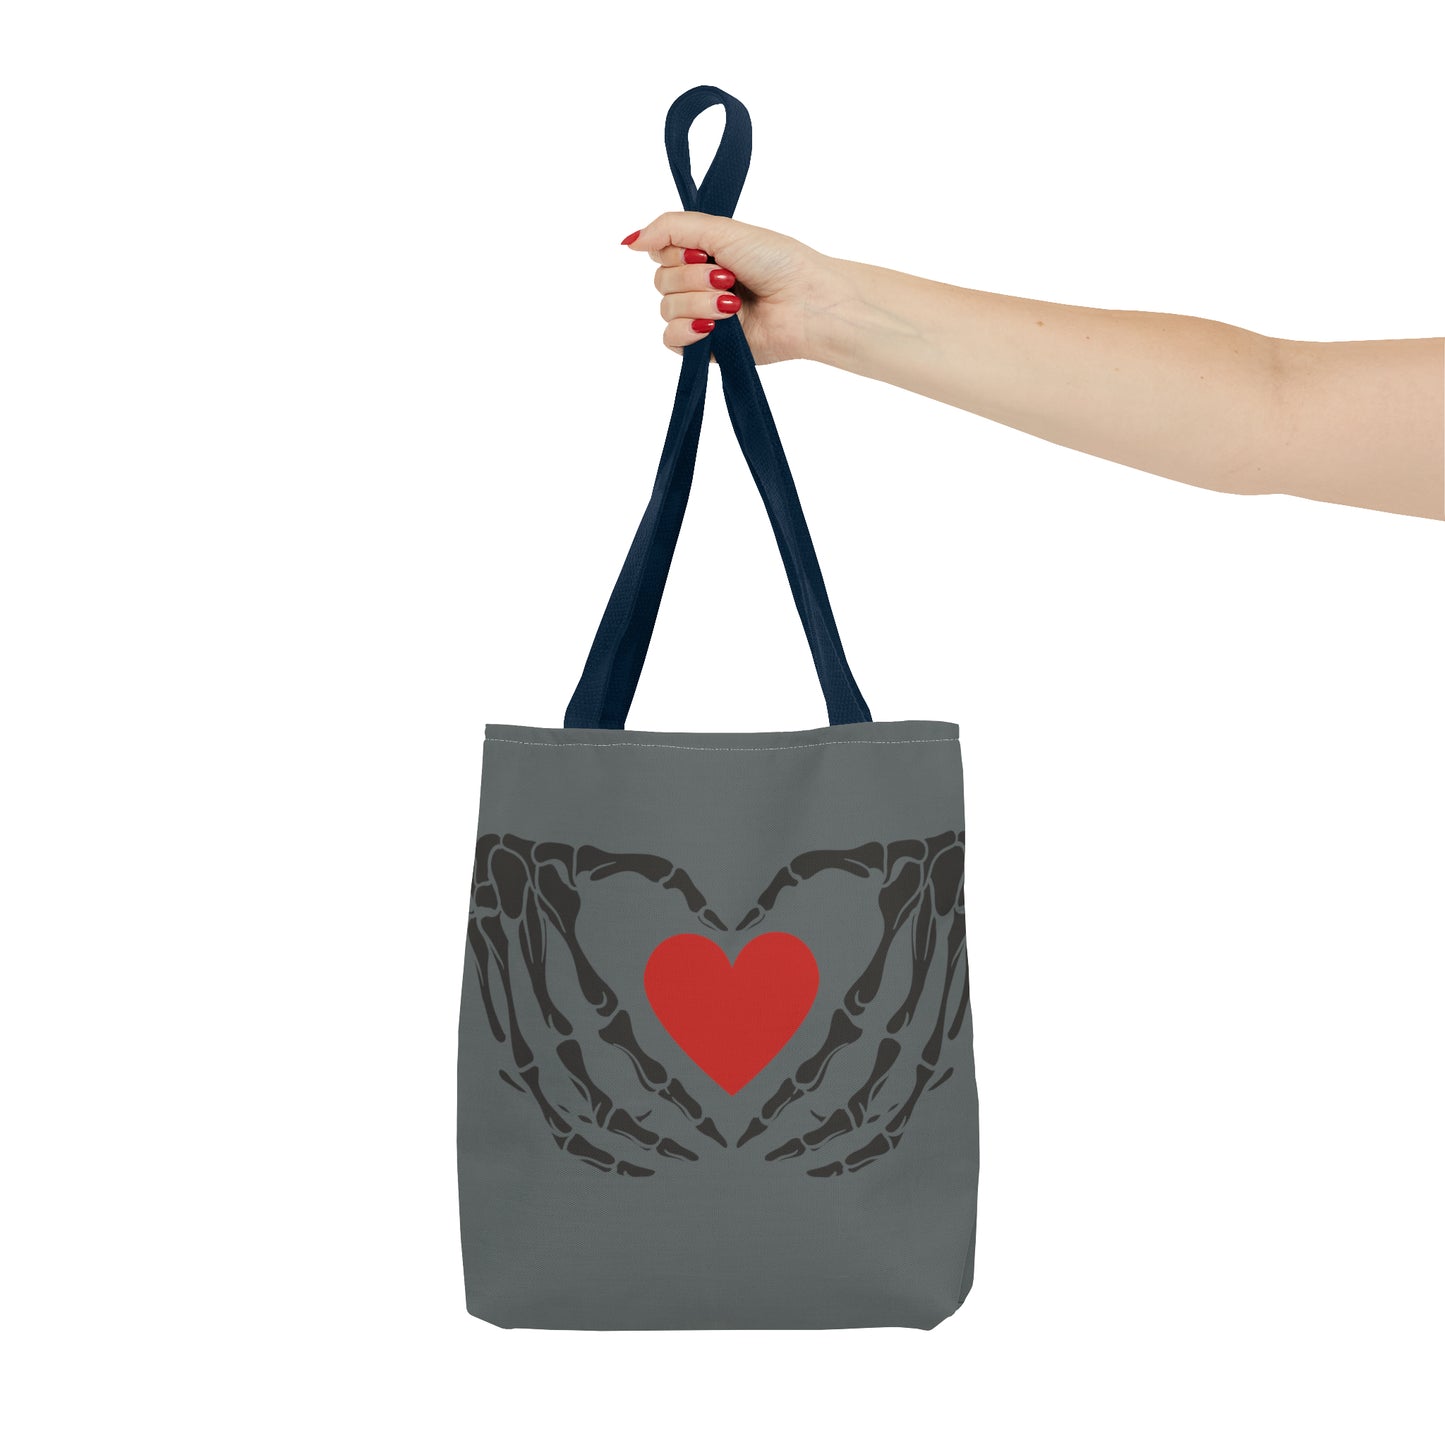 Black Skeleton Hands and Heart Valentine Tote Bag